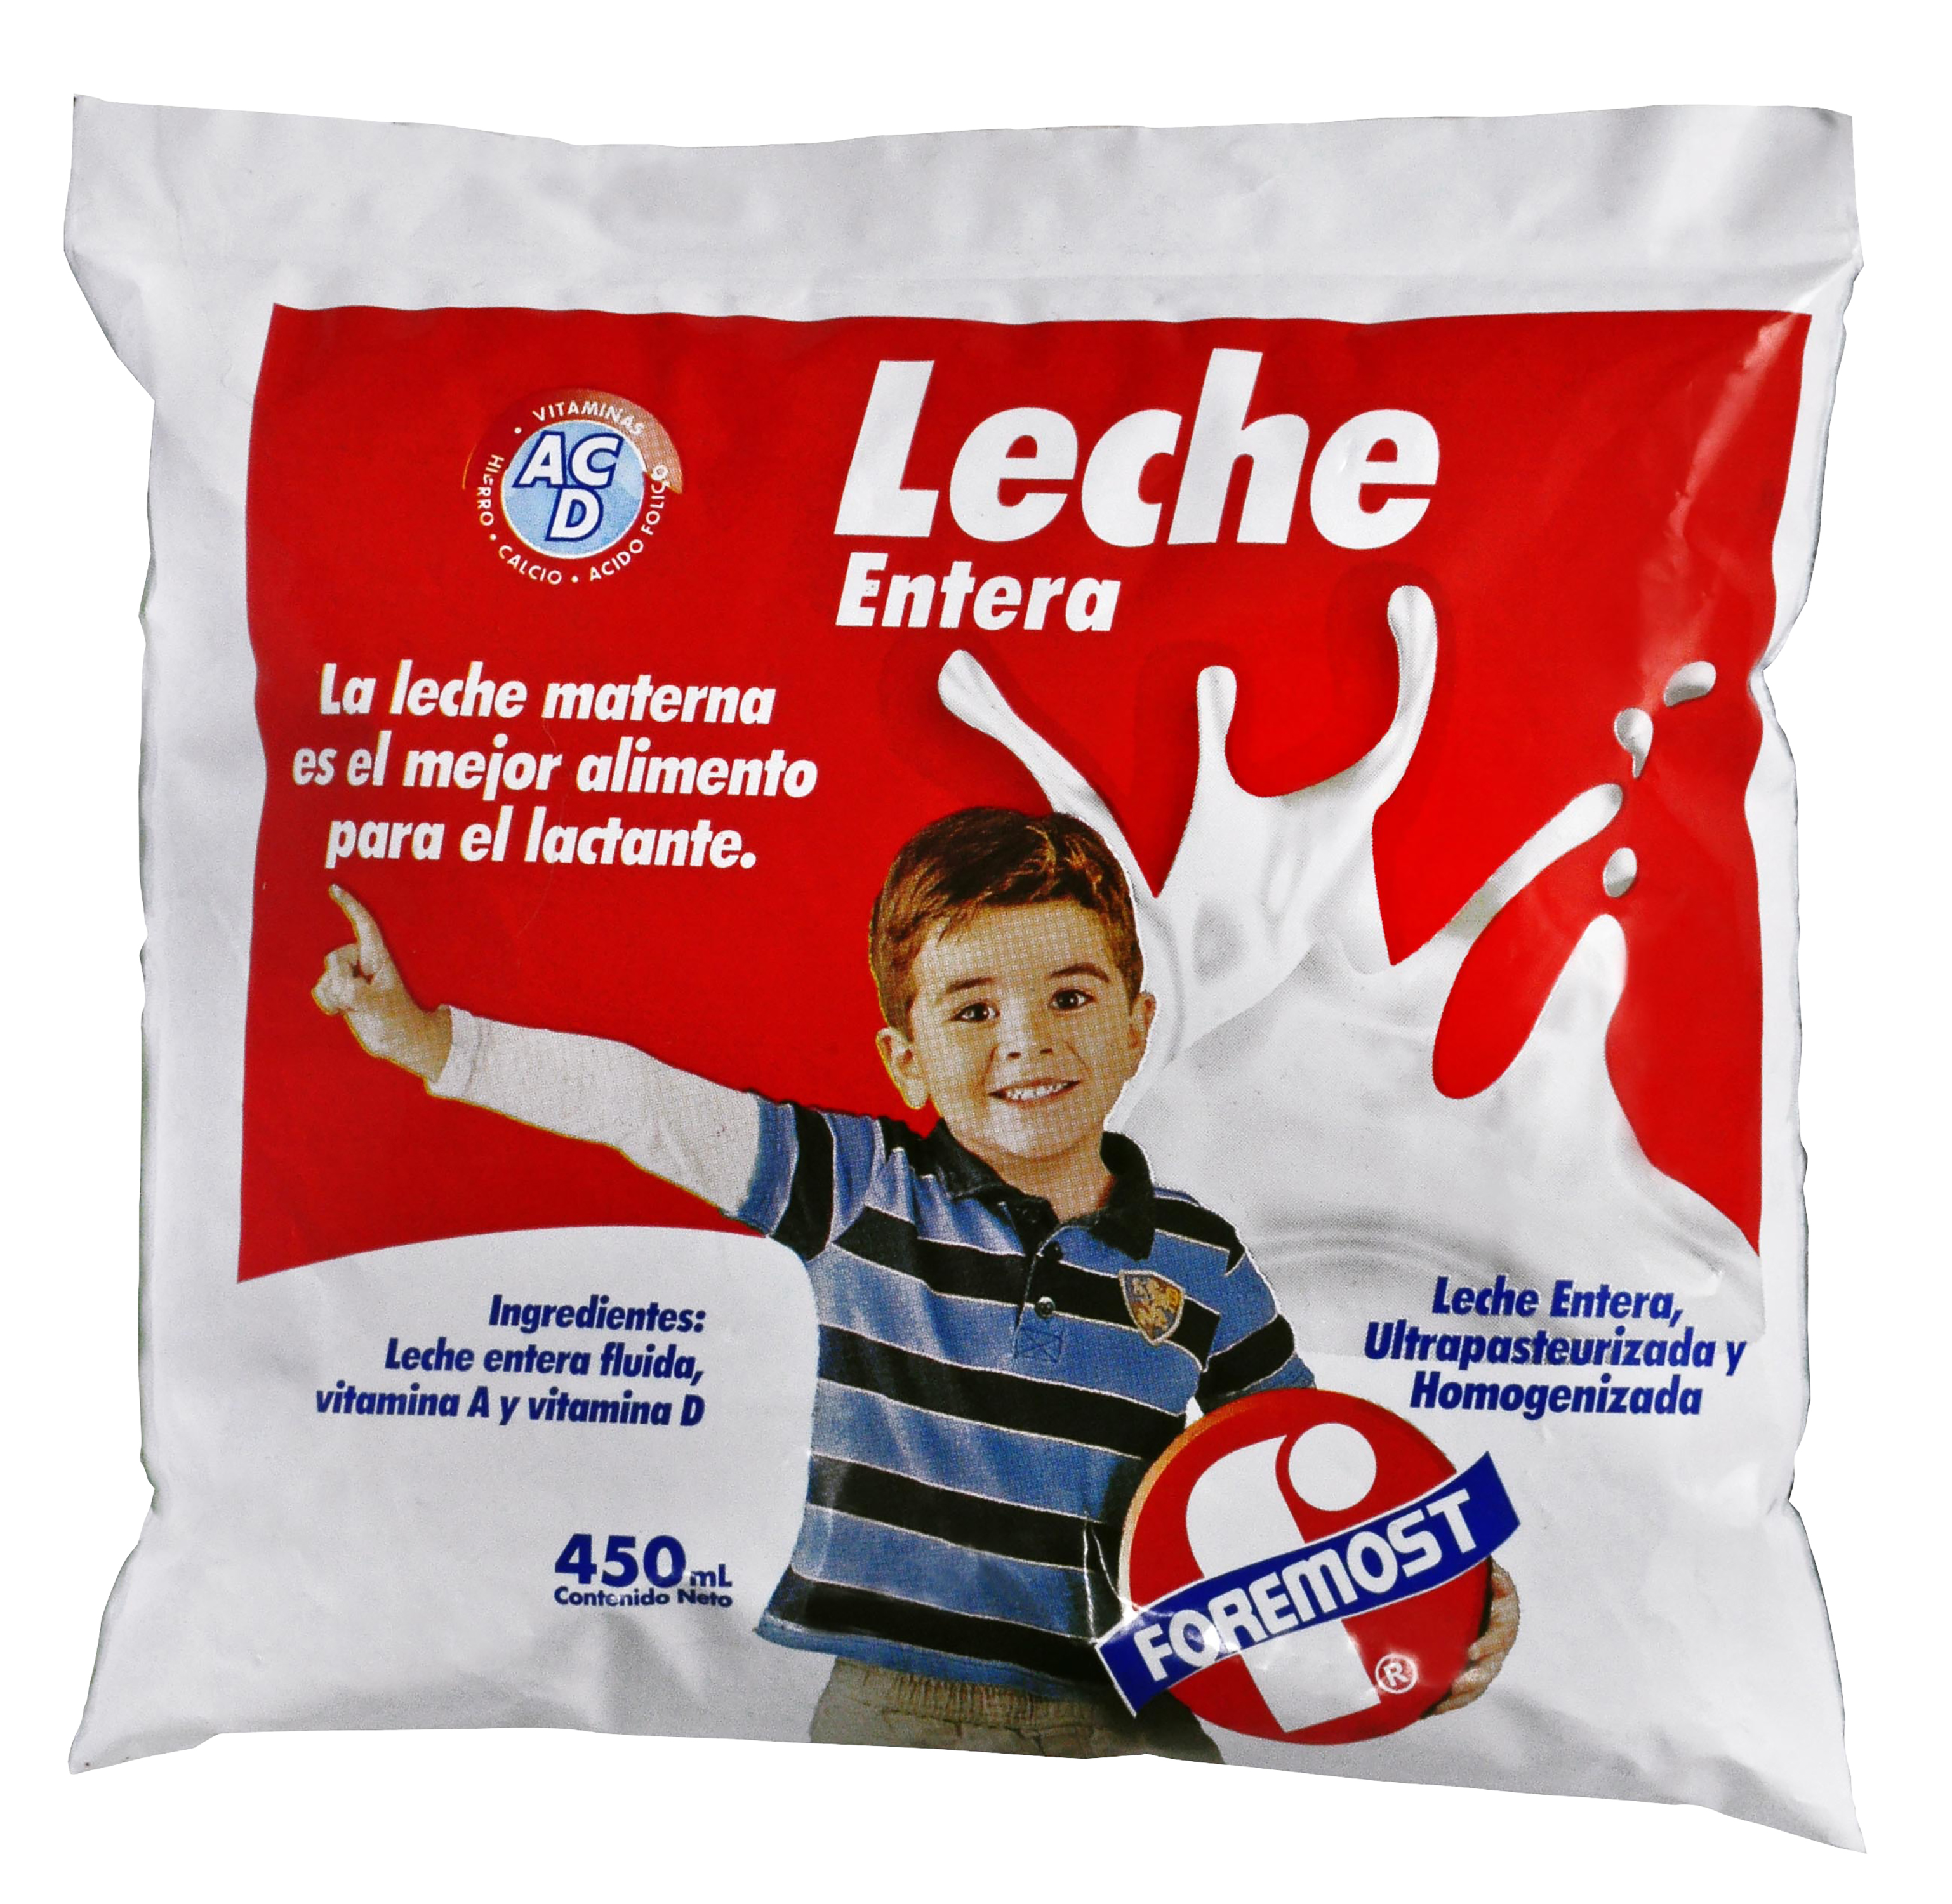 Perder productos quimicos León Bolsa Leche Foremost Entera - 450ml